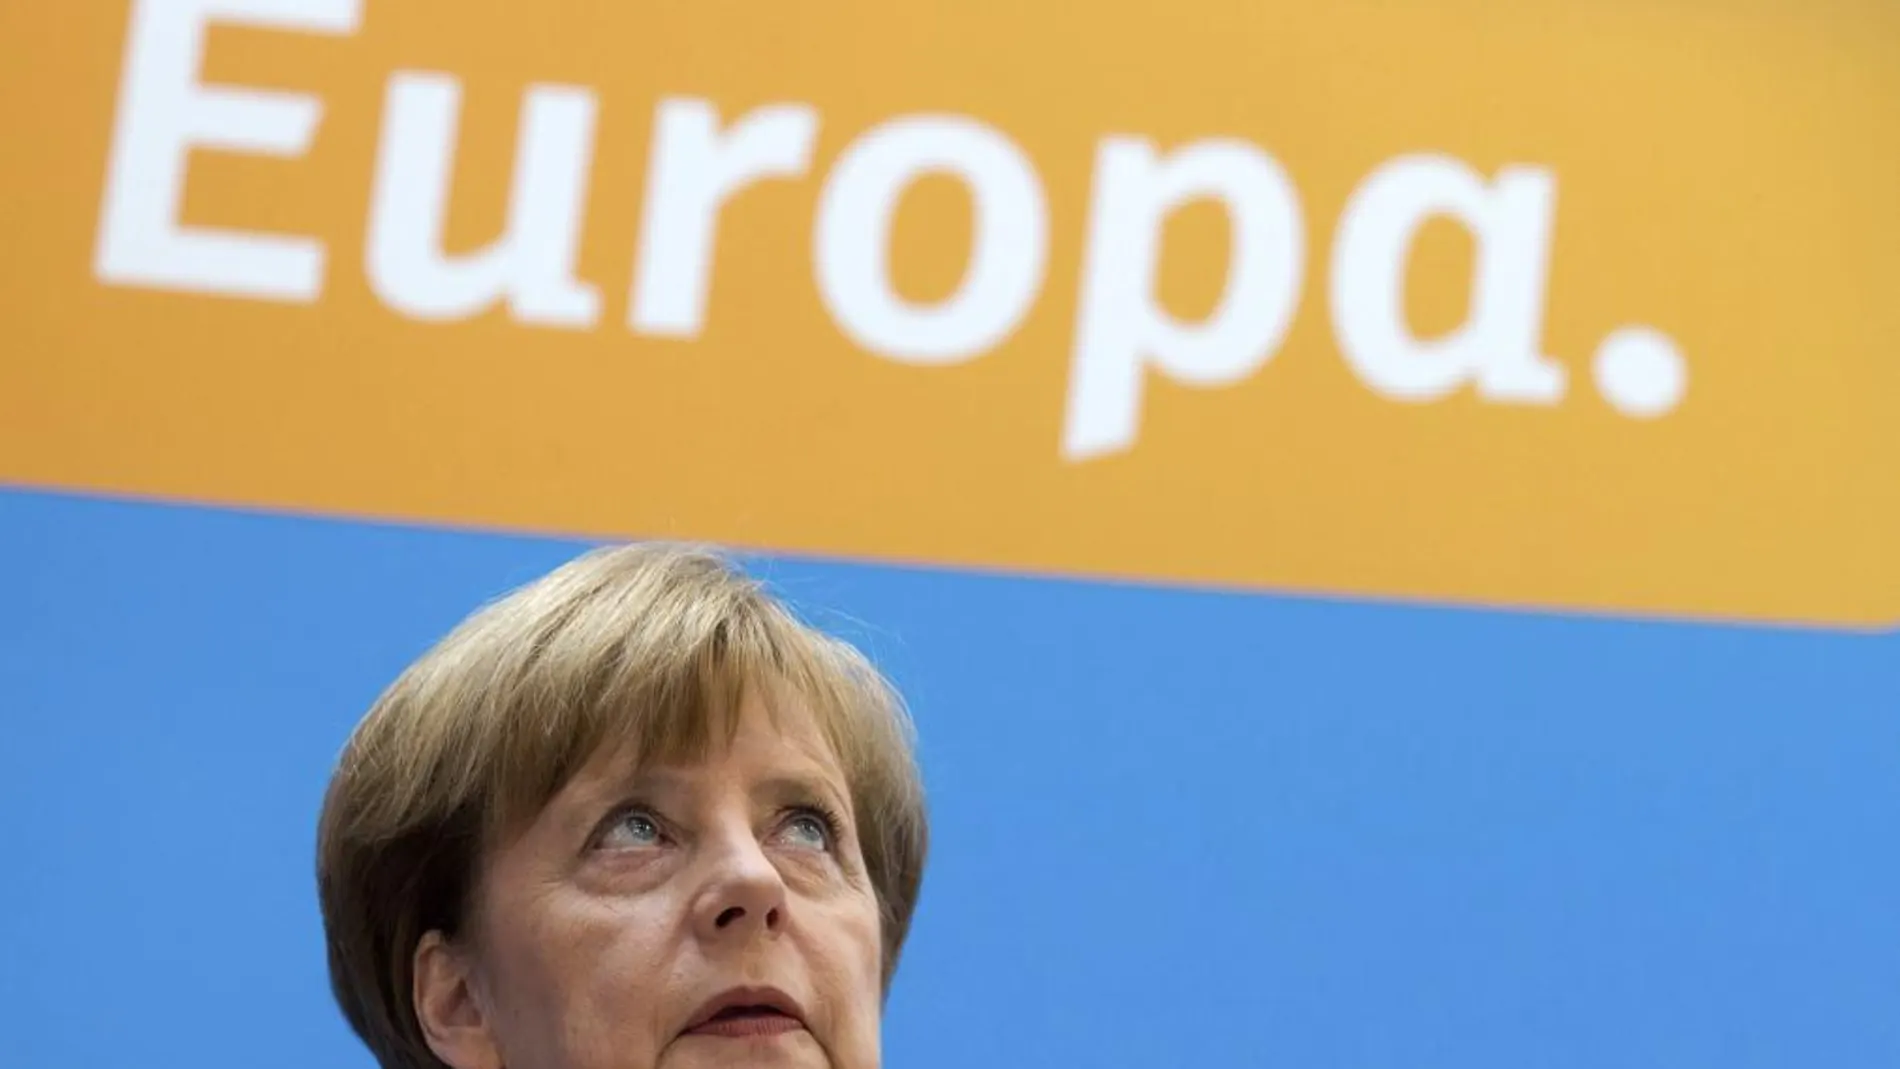 La canciller alemana, Angela Merkel, sonríe durante una reunión de la Unión Cristianodemócrata (CDU) para analizar los resultados de las elecciones europeas, en Berlín